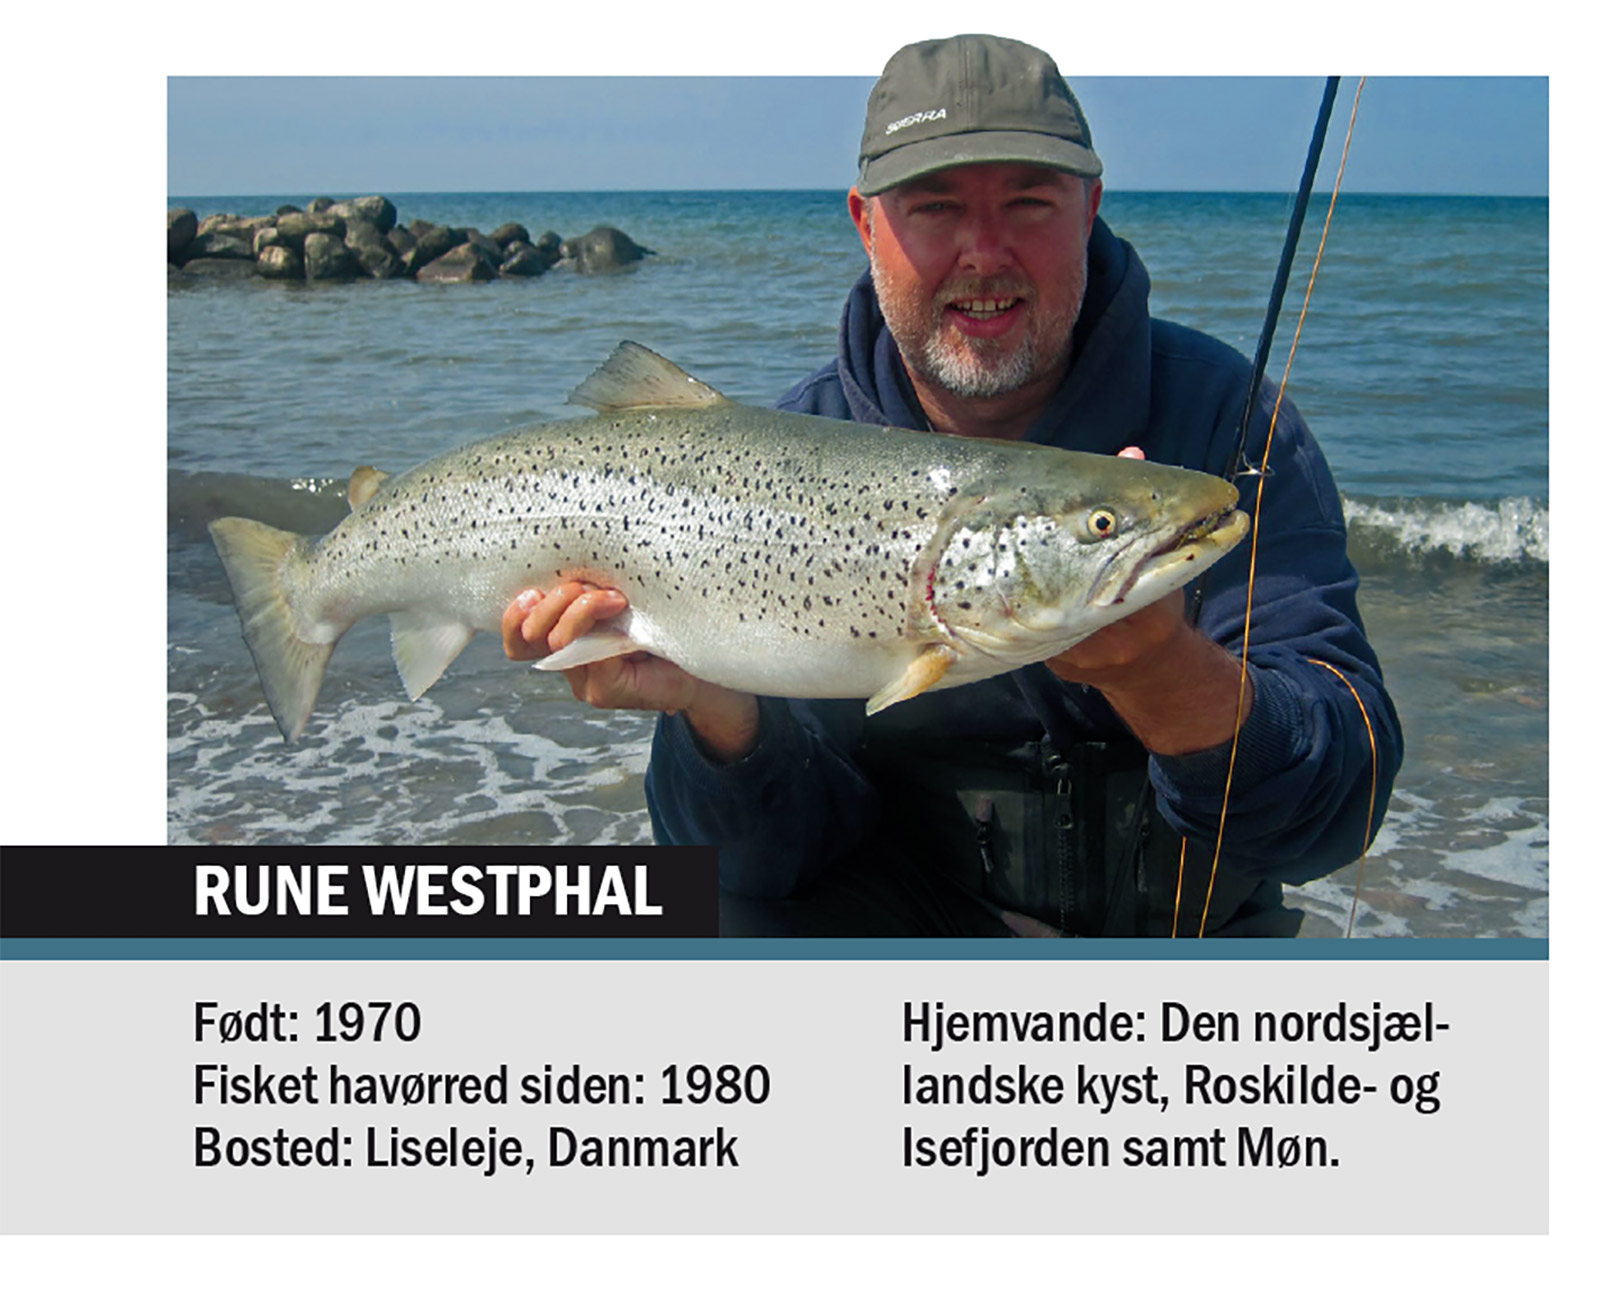 Rune Westphal